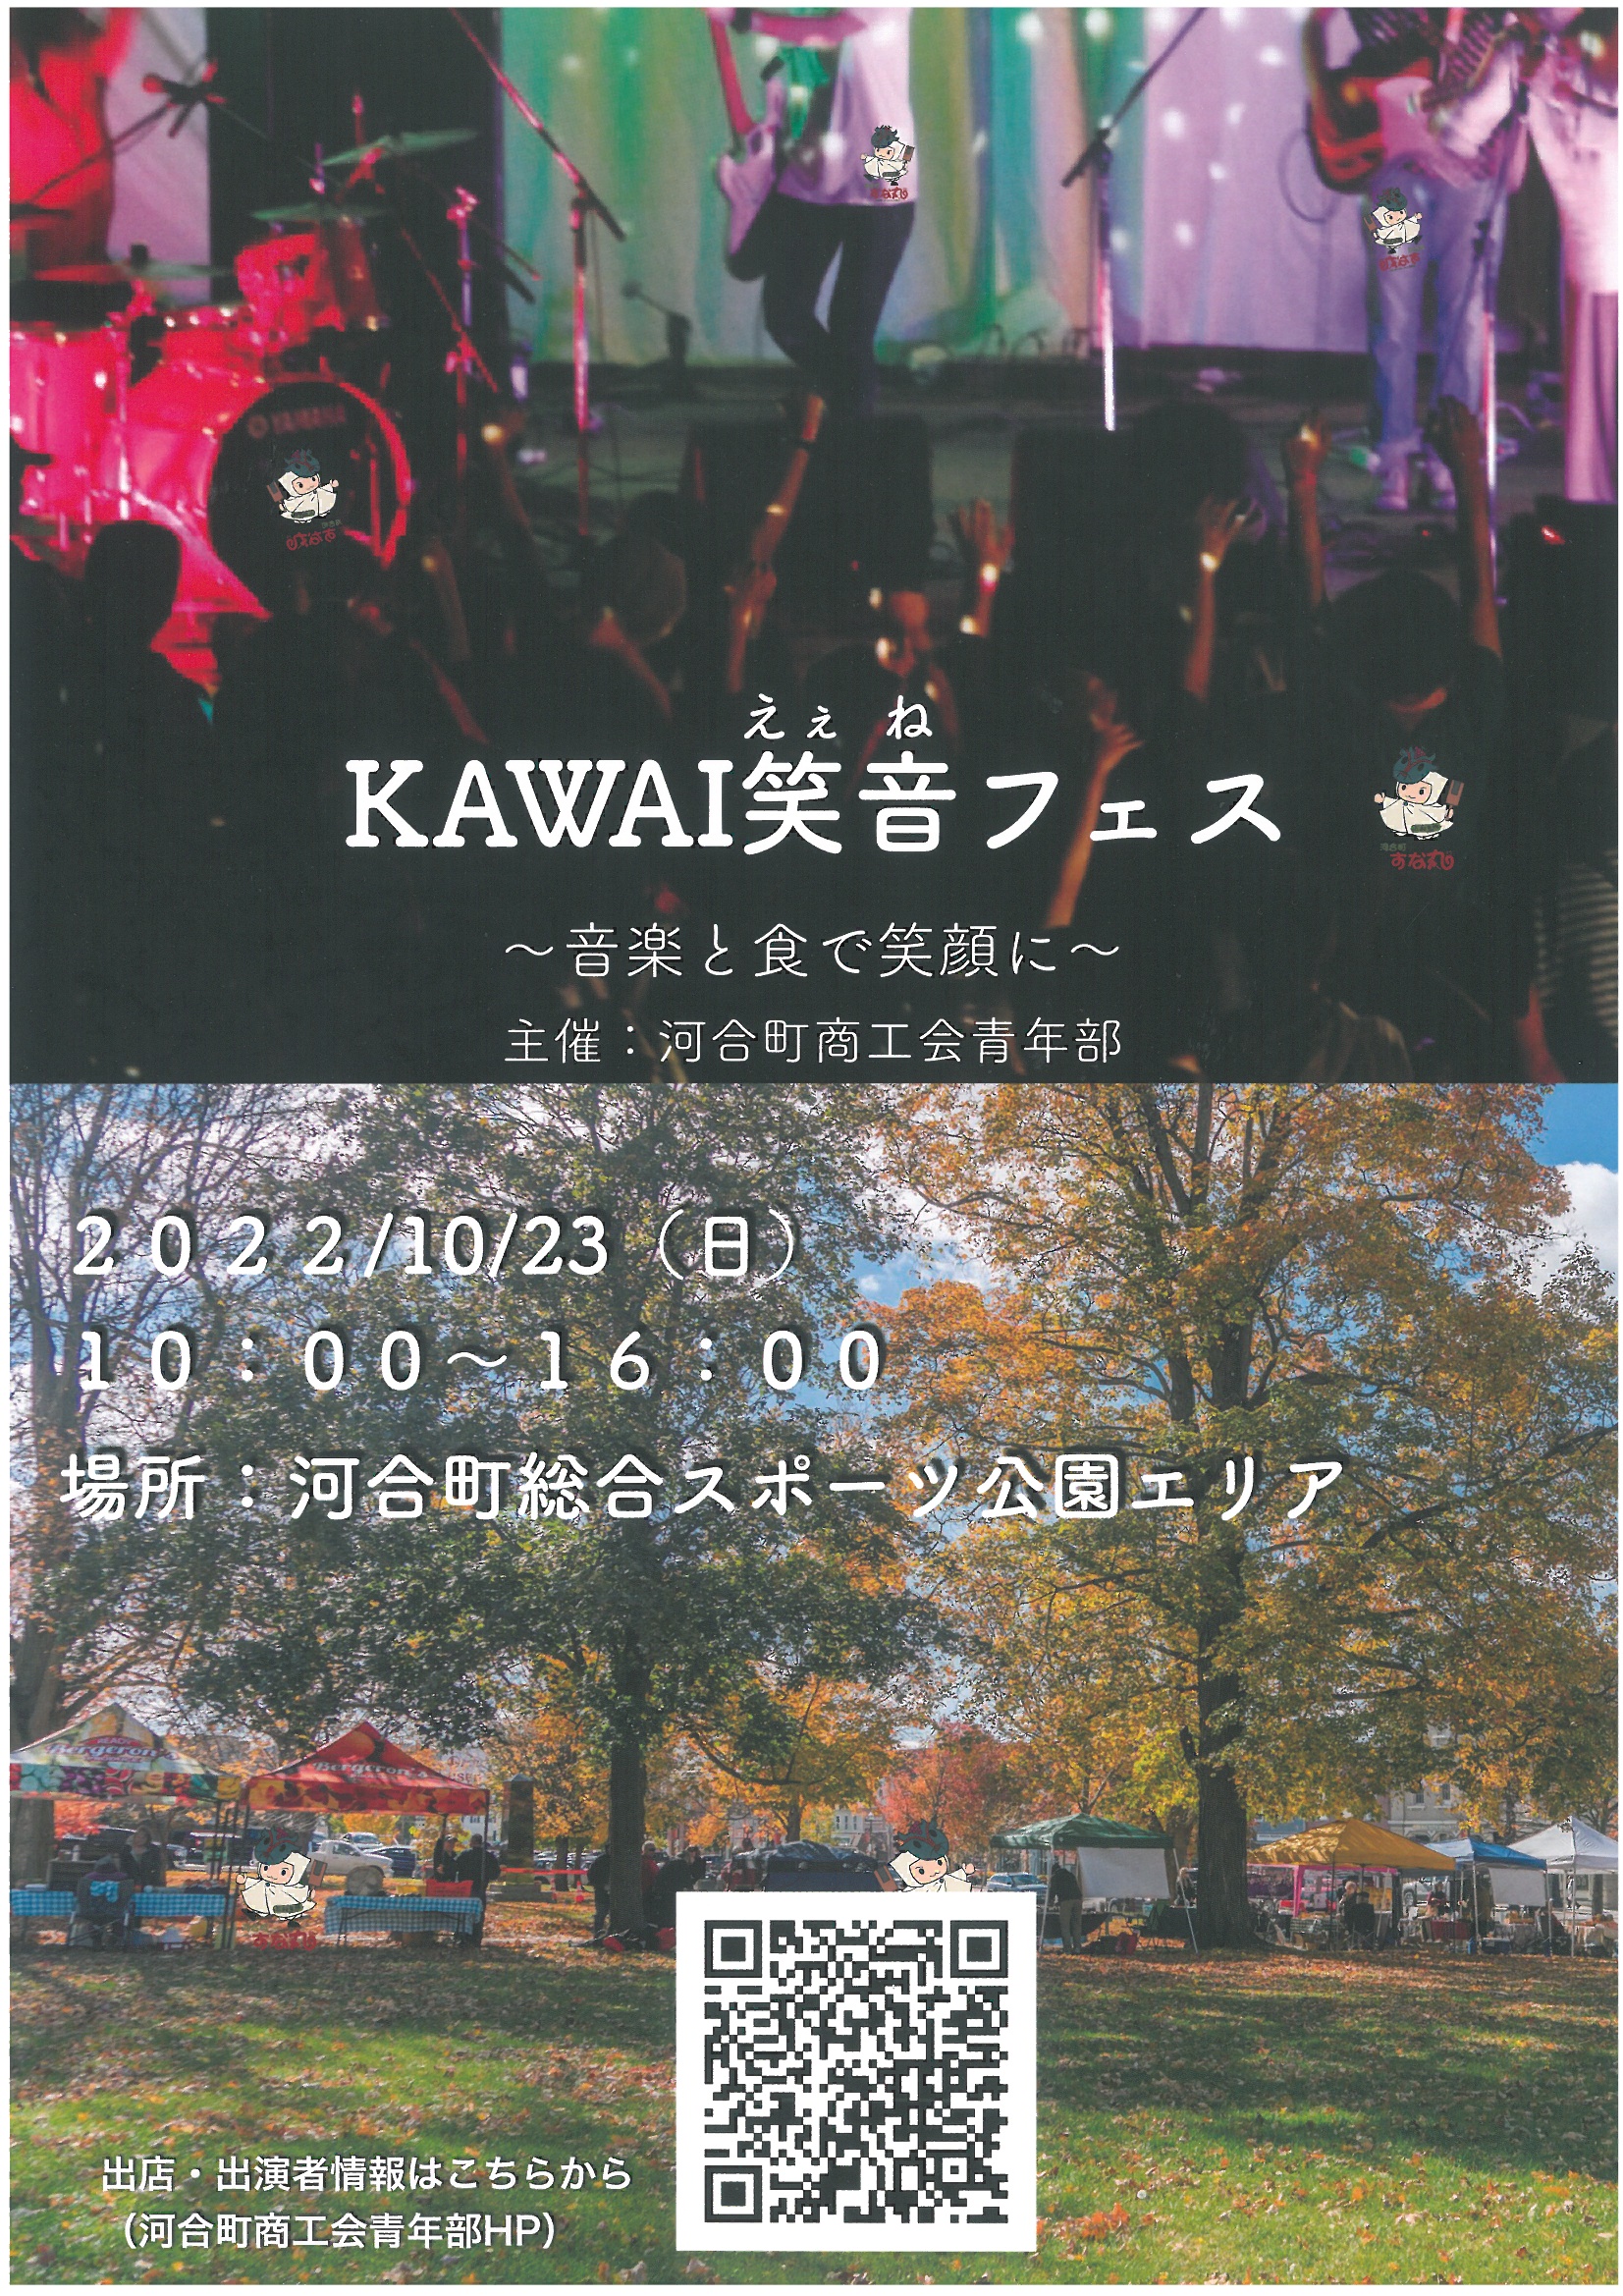 KAWAI笑音フェスの開催について。